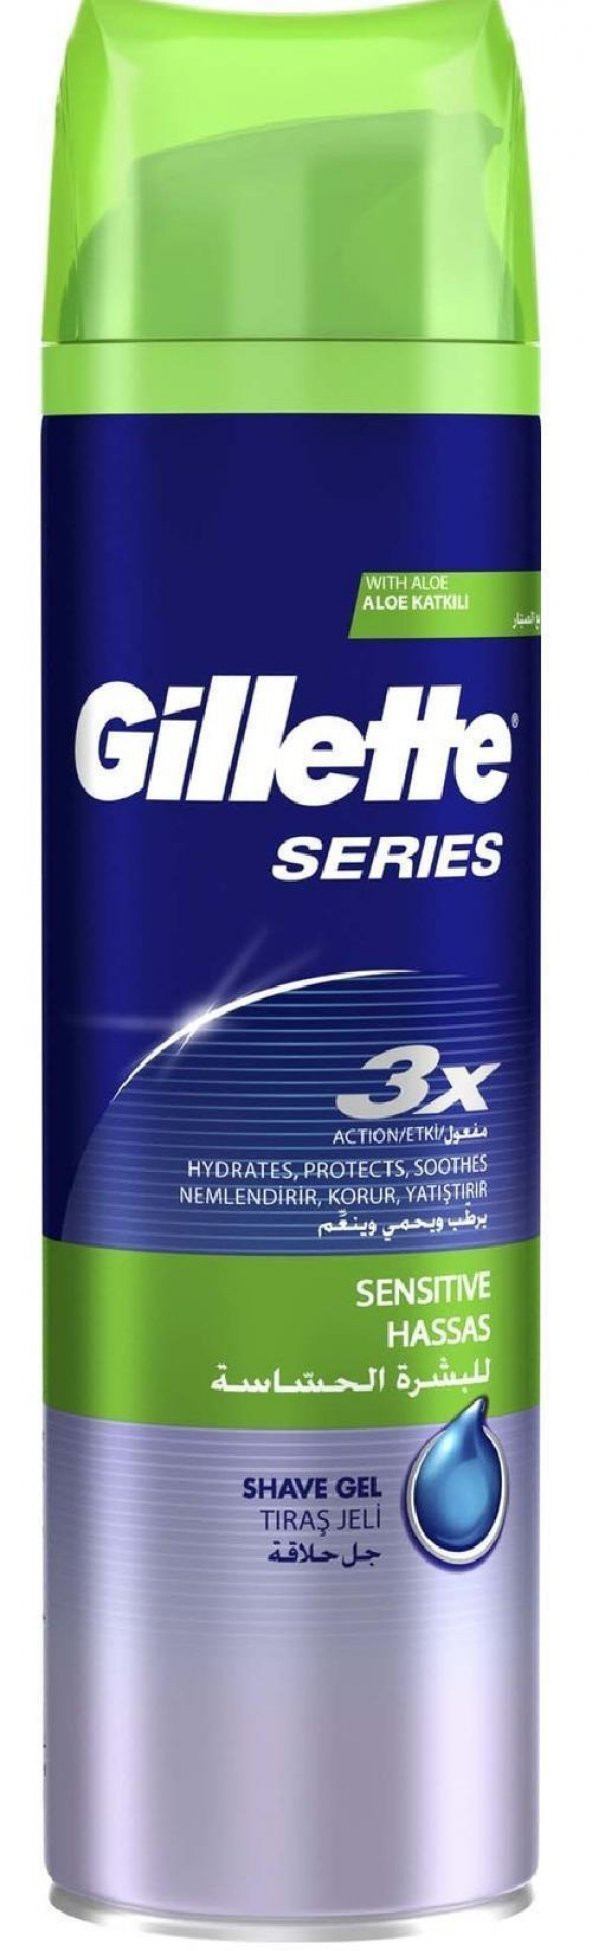 Gillette Traş Jeli Serıes Sensıtıve Hassas Ciltler 200 Ml